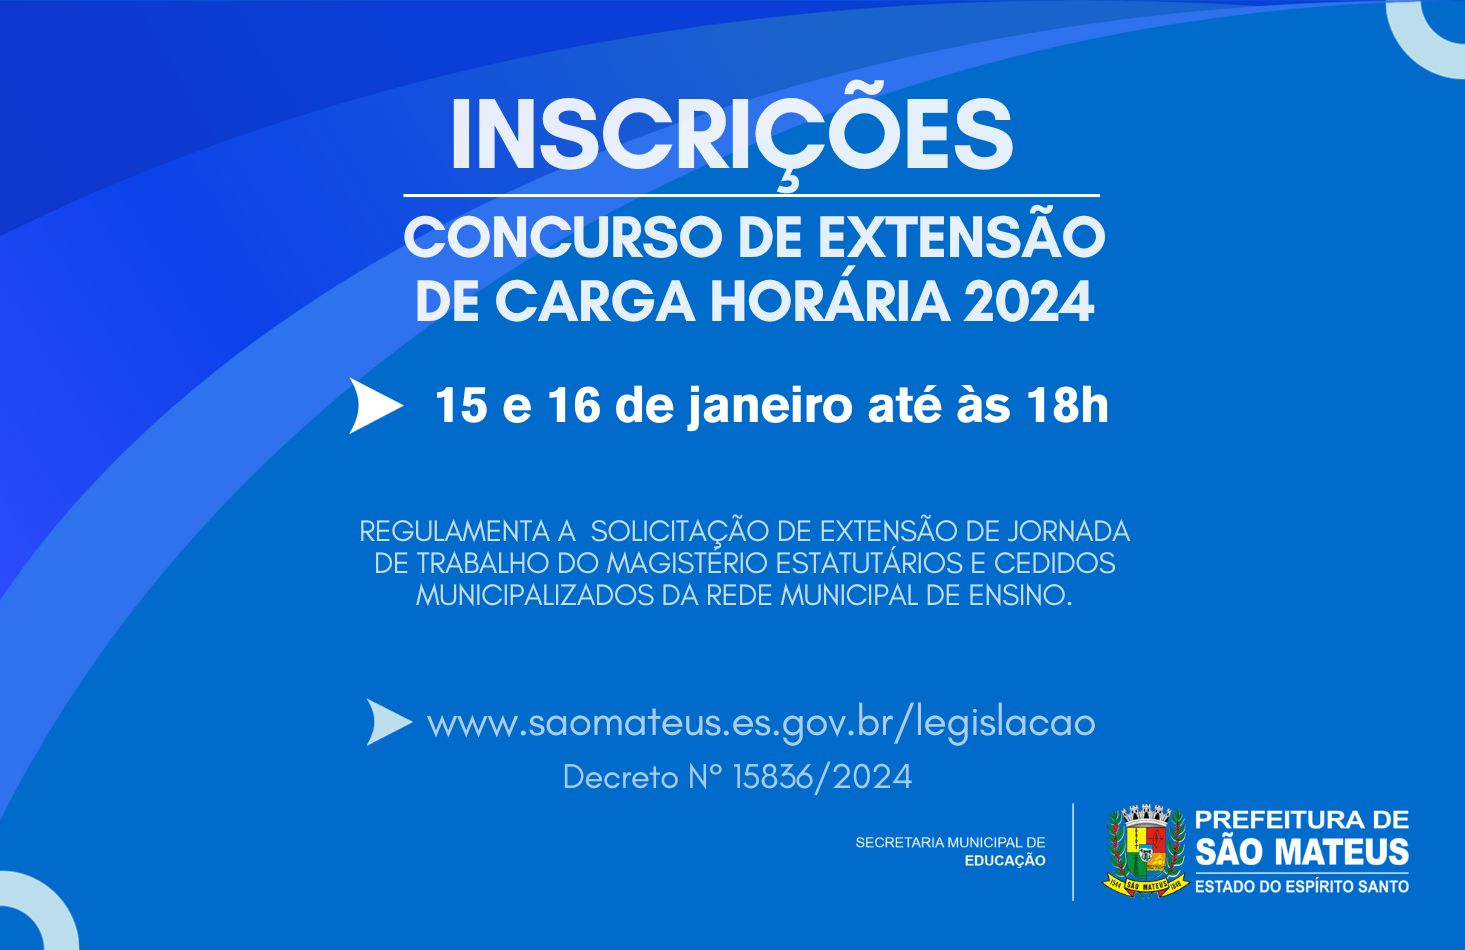 INSCRIÇÕES PARA O CONCURSO DE EXTENSÃO DE CARGA HORÁRIA - 2024